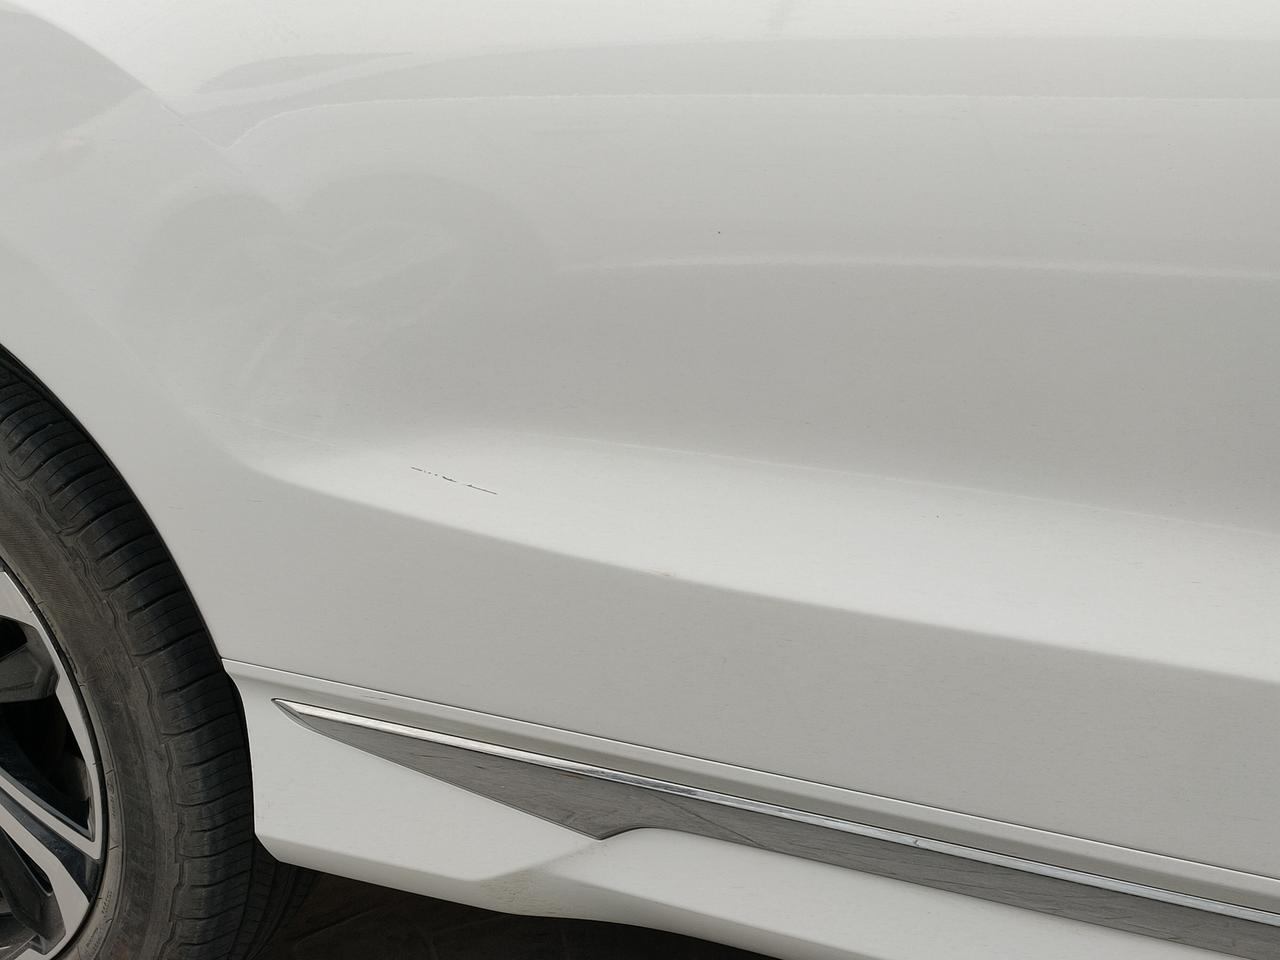 本田UR-V 车停在那被刮了  有没有好看点的贴纸啥的给遮住推荐一下  不想补漆